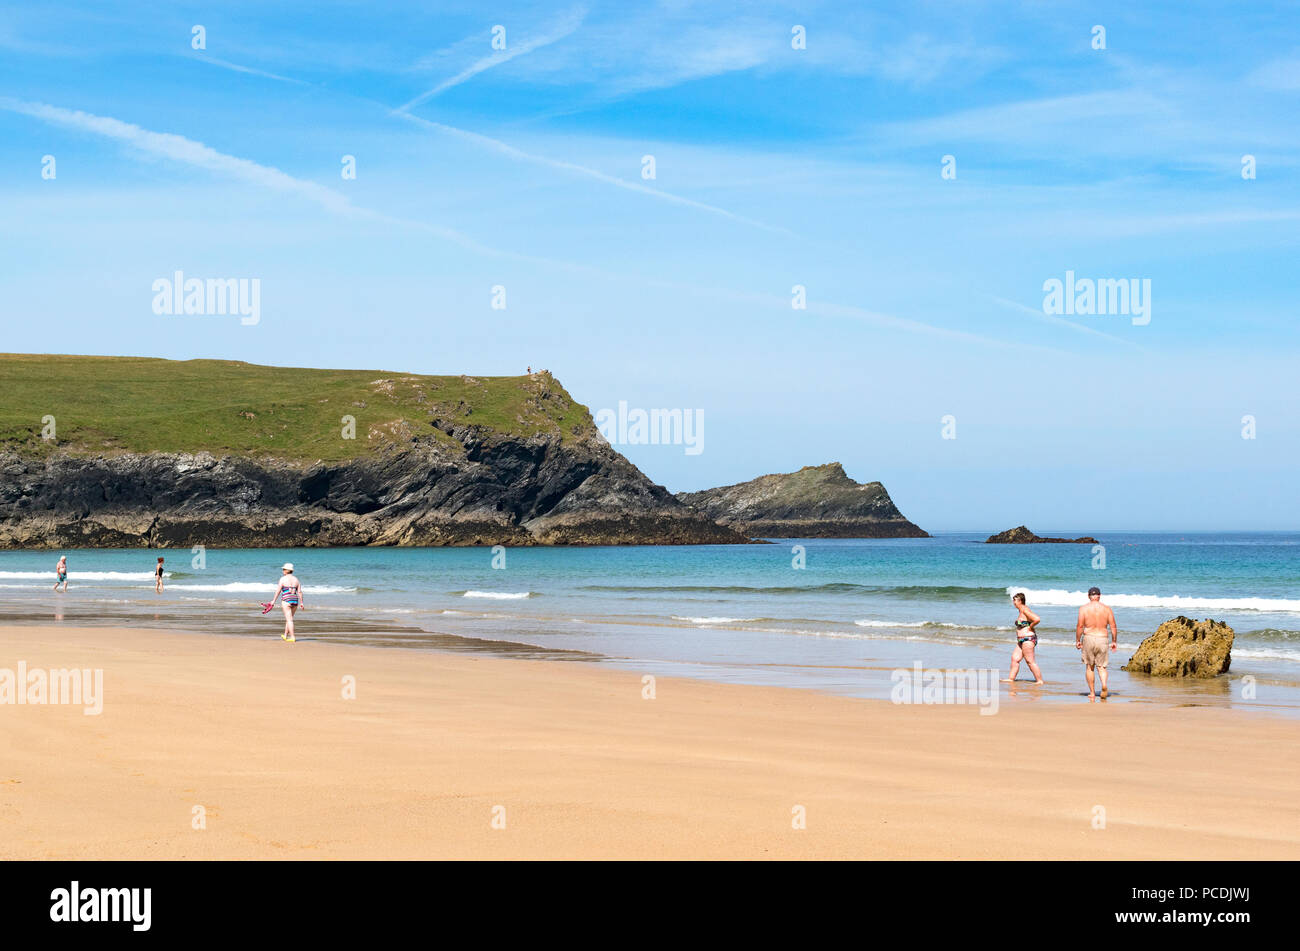 Au début de l'été, porth joke Polly Joke beach, Cornwall, Angleterre, Grande-Bretagne, Royaume-Uni. Banque D'Images